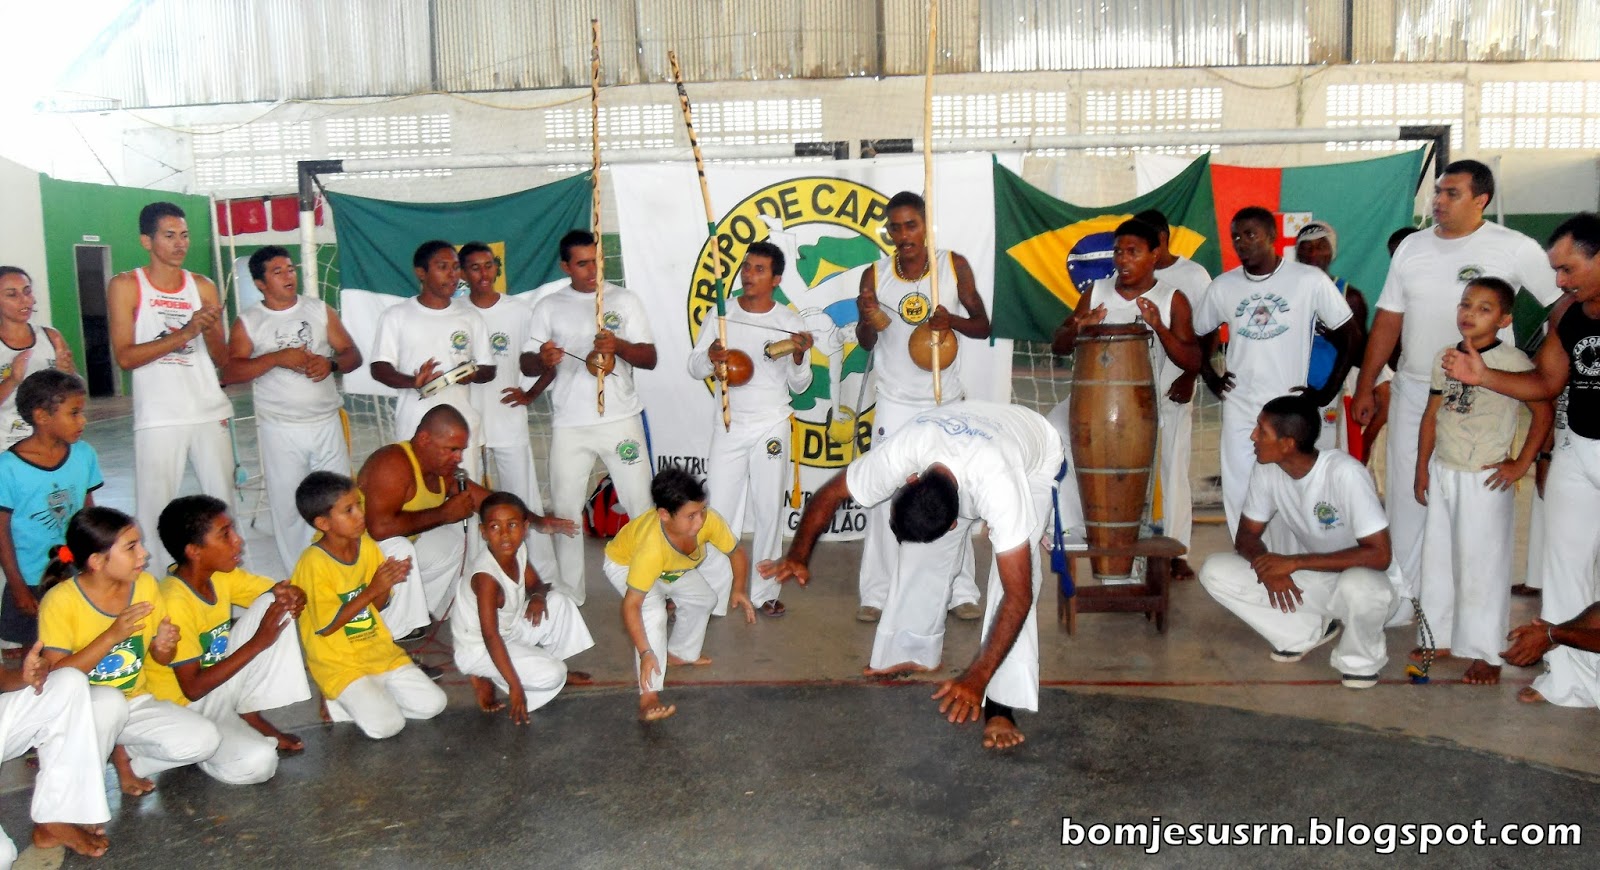 100 Bj Grupo De Capoeira Realizará Grande Encontro Neste Final De